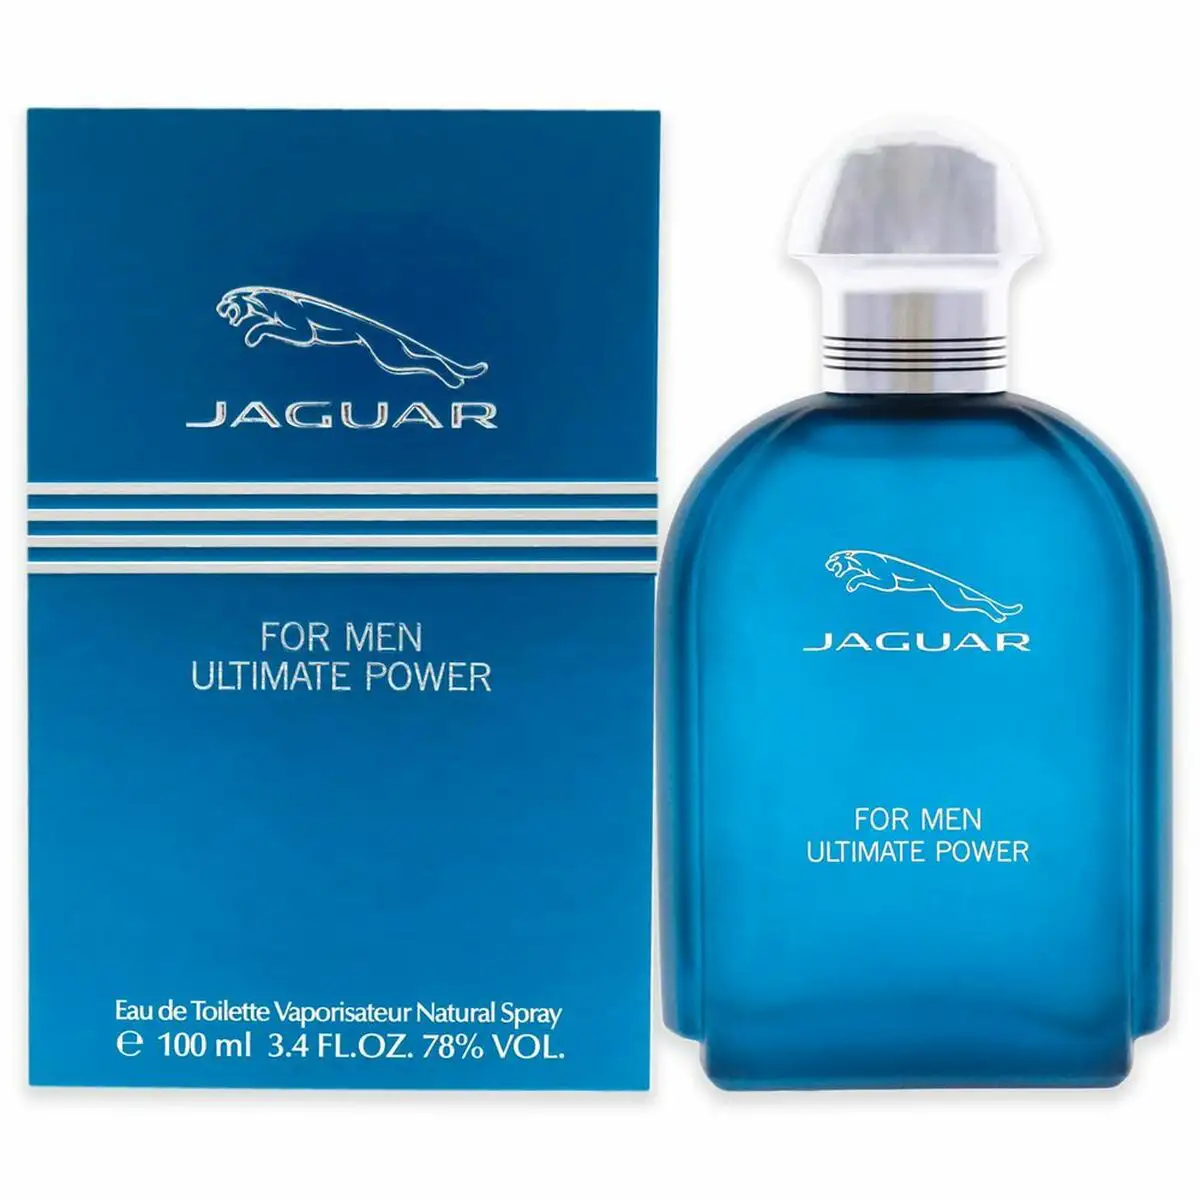 Parfum homme jaguar edt 100 ml_8513. Bienvenue chez DIAYTAR SENEGAL - Où le Shopping Rencontre la Qualité. Explorez notre sélection soigneusement conçue et trouvez des produits qui définissent le luxe abordable.